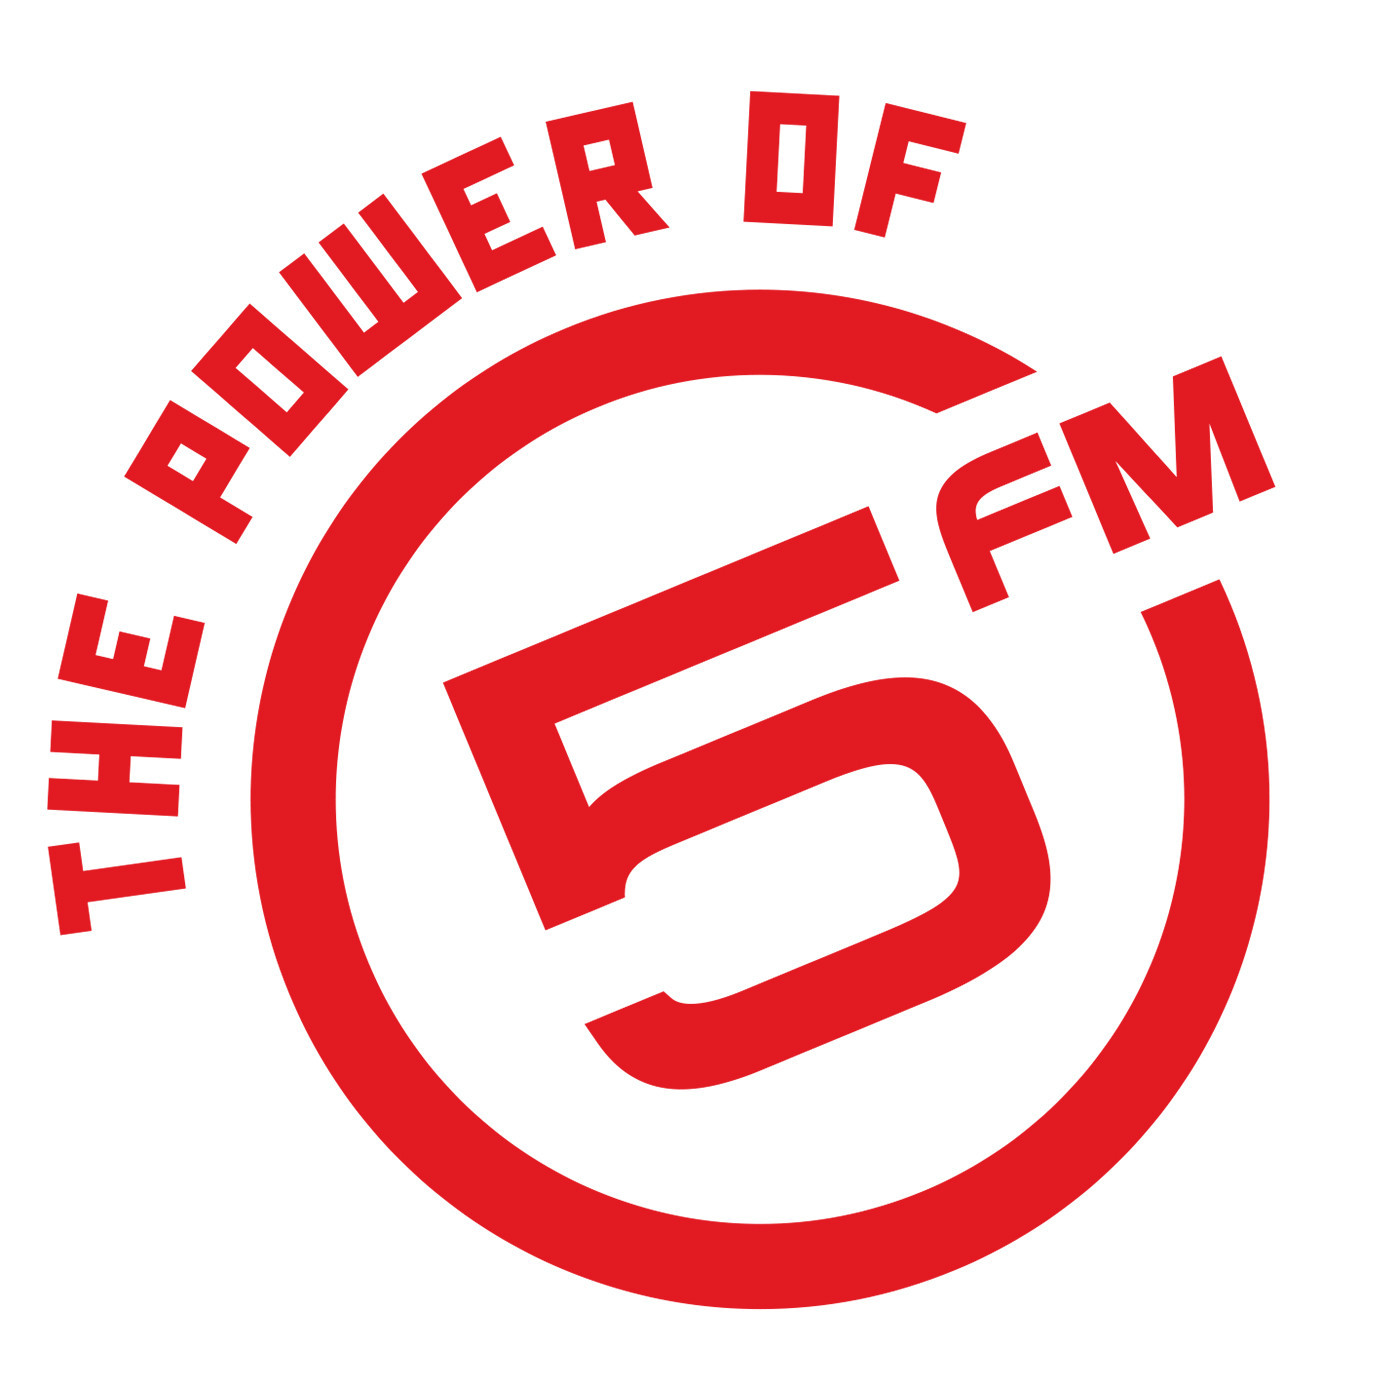 5FM LEGENDS TAMARA DEY INTERVIEW (26 FEB)